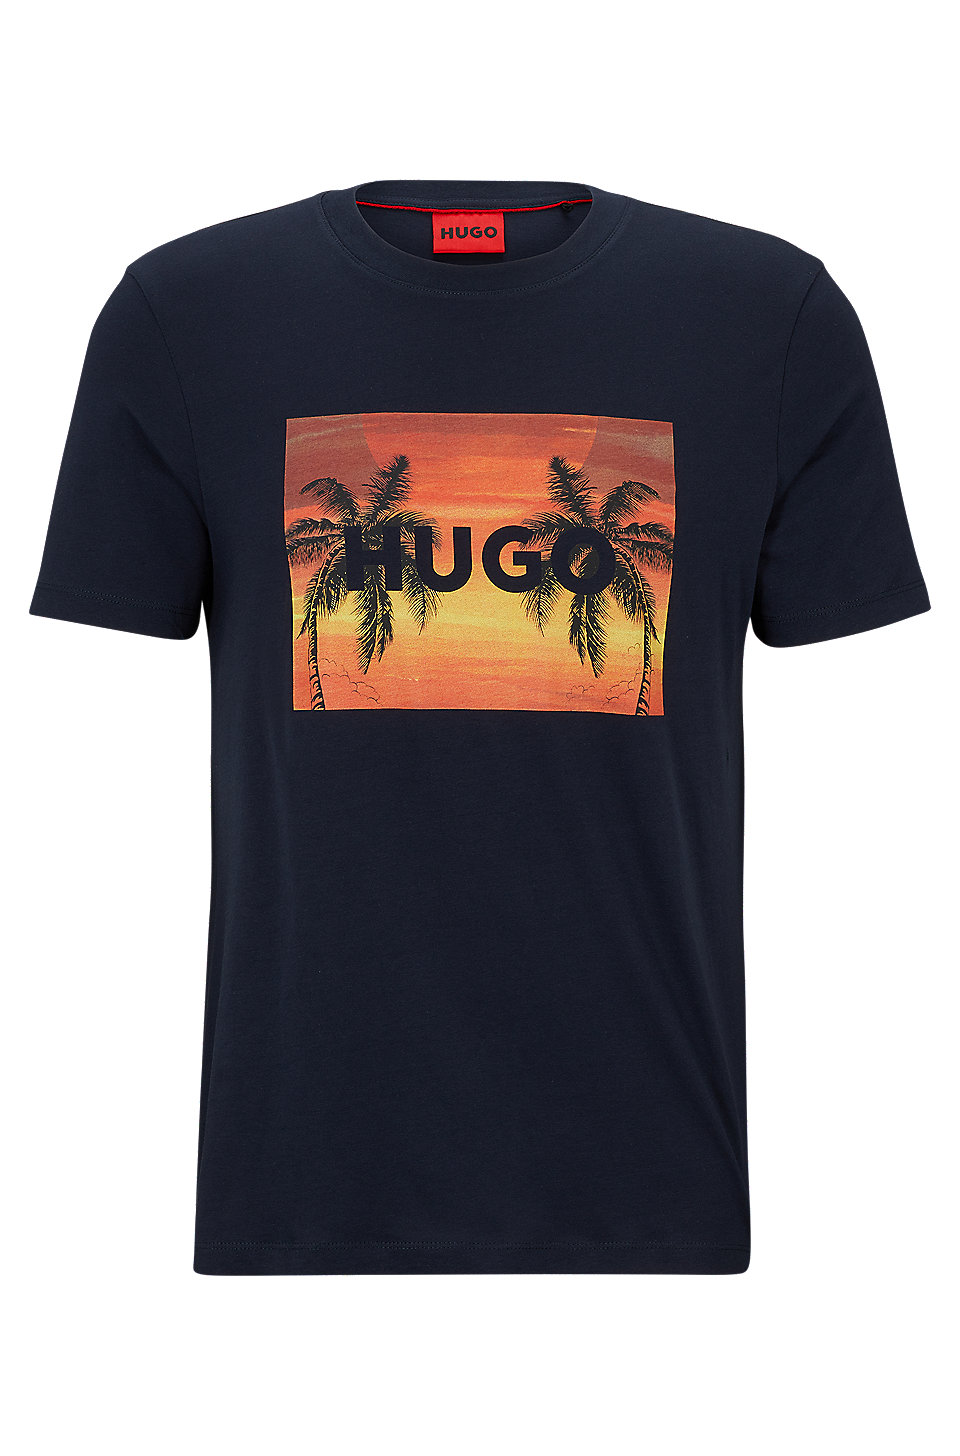 Morgenøvelser tigger område HUGO - Cotton-jersey T-shirt with branded palm-tree artwork